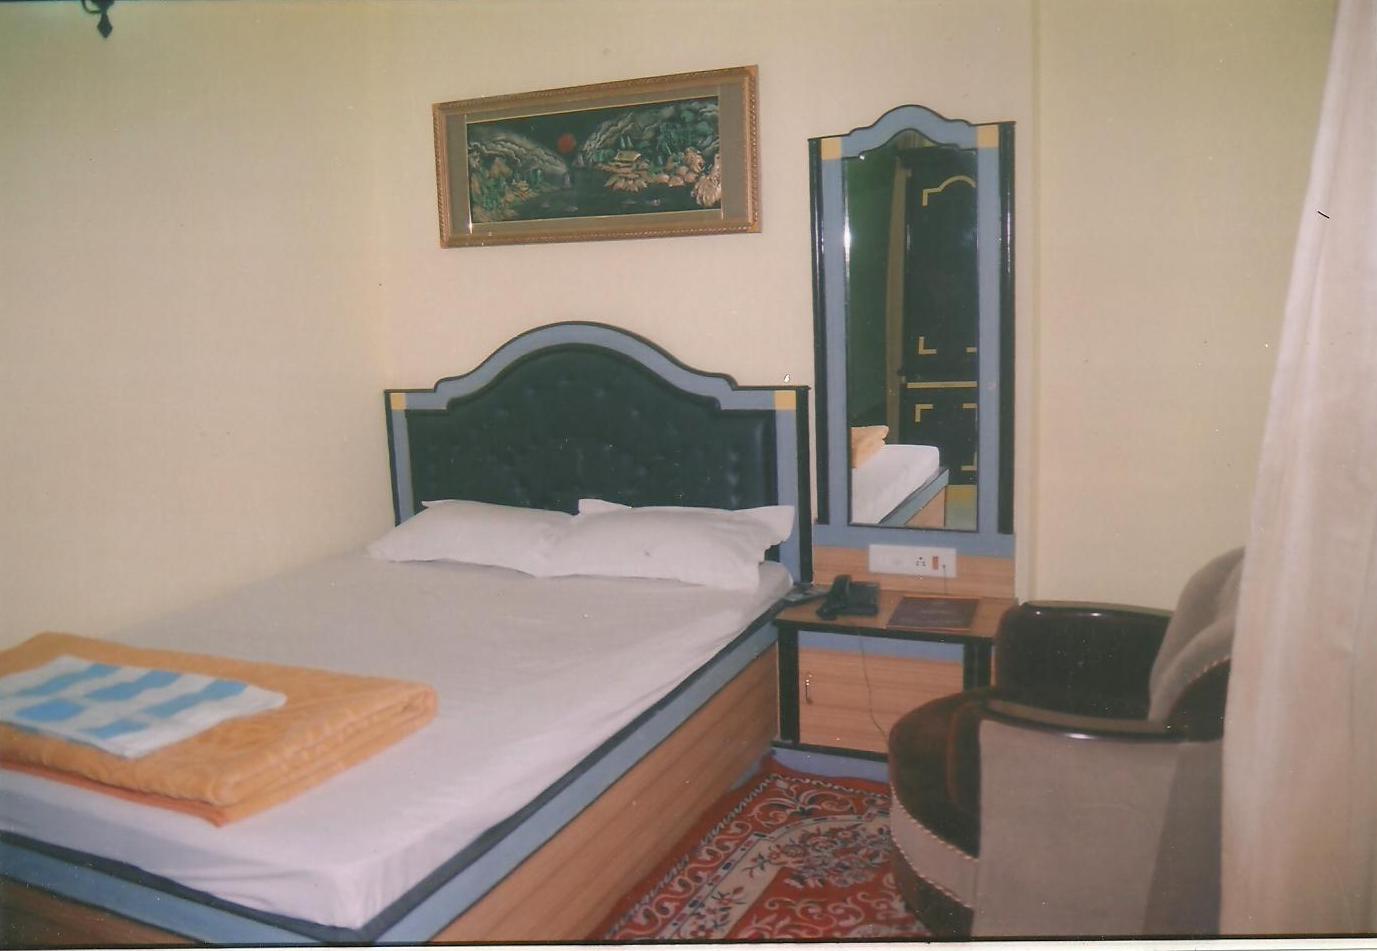 DELUXE HOTEL IN BEGUSARAI